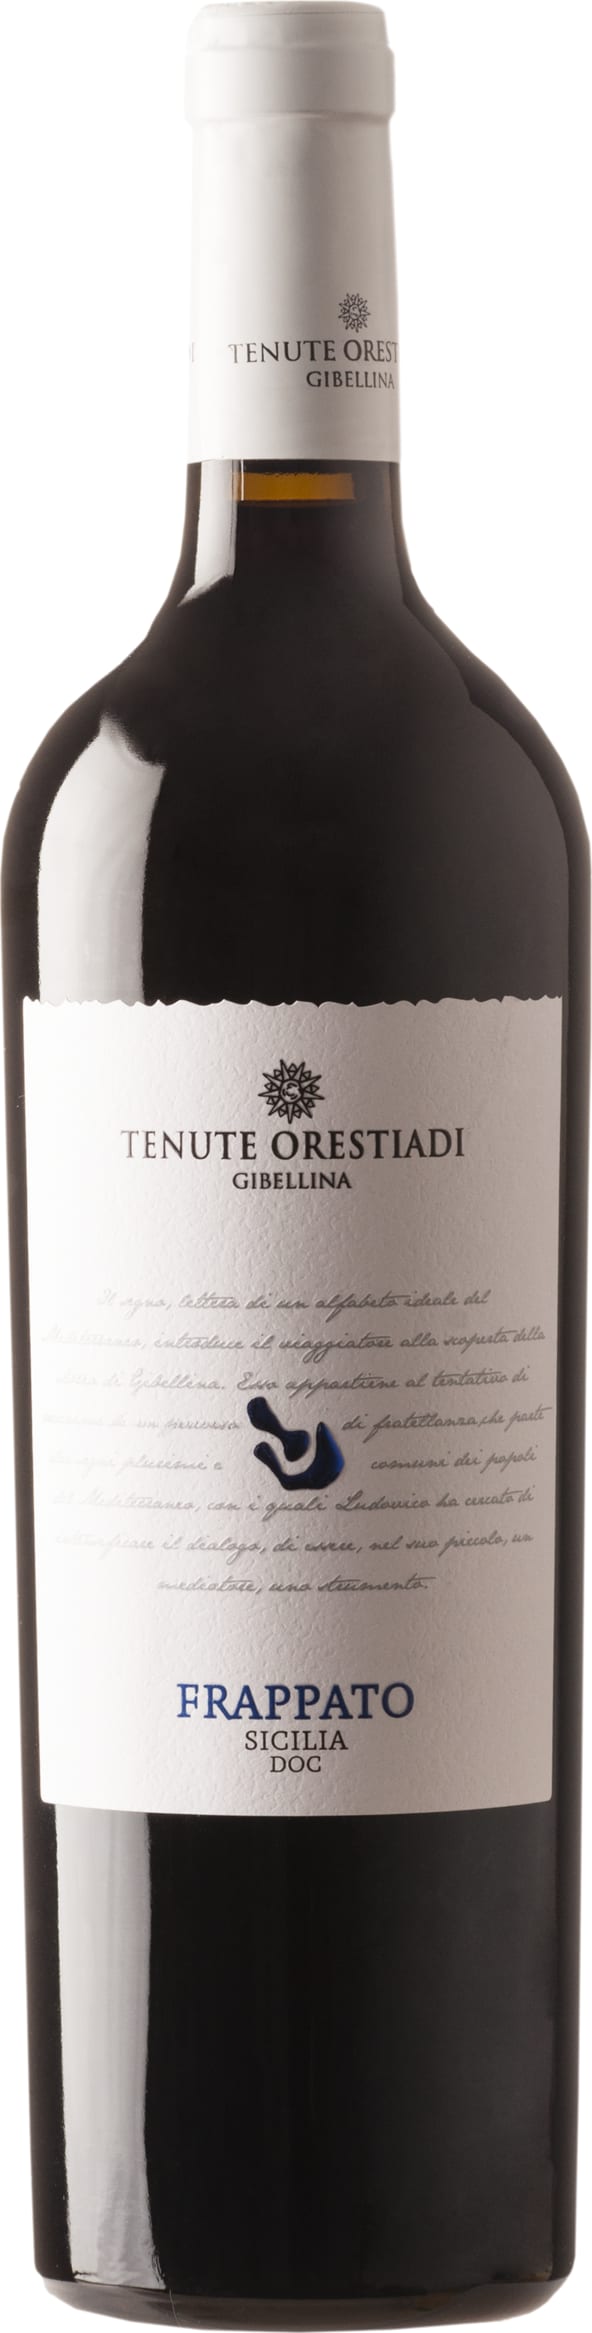 Tenute Orestiadi - Tenute Orestiadi Frappato 2021 75cl - Buy Tenute Orestiadi - Tenute Orestiadi Wines from GREAT WINES DIRECT wine shop